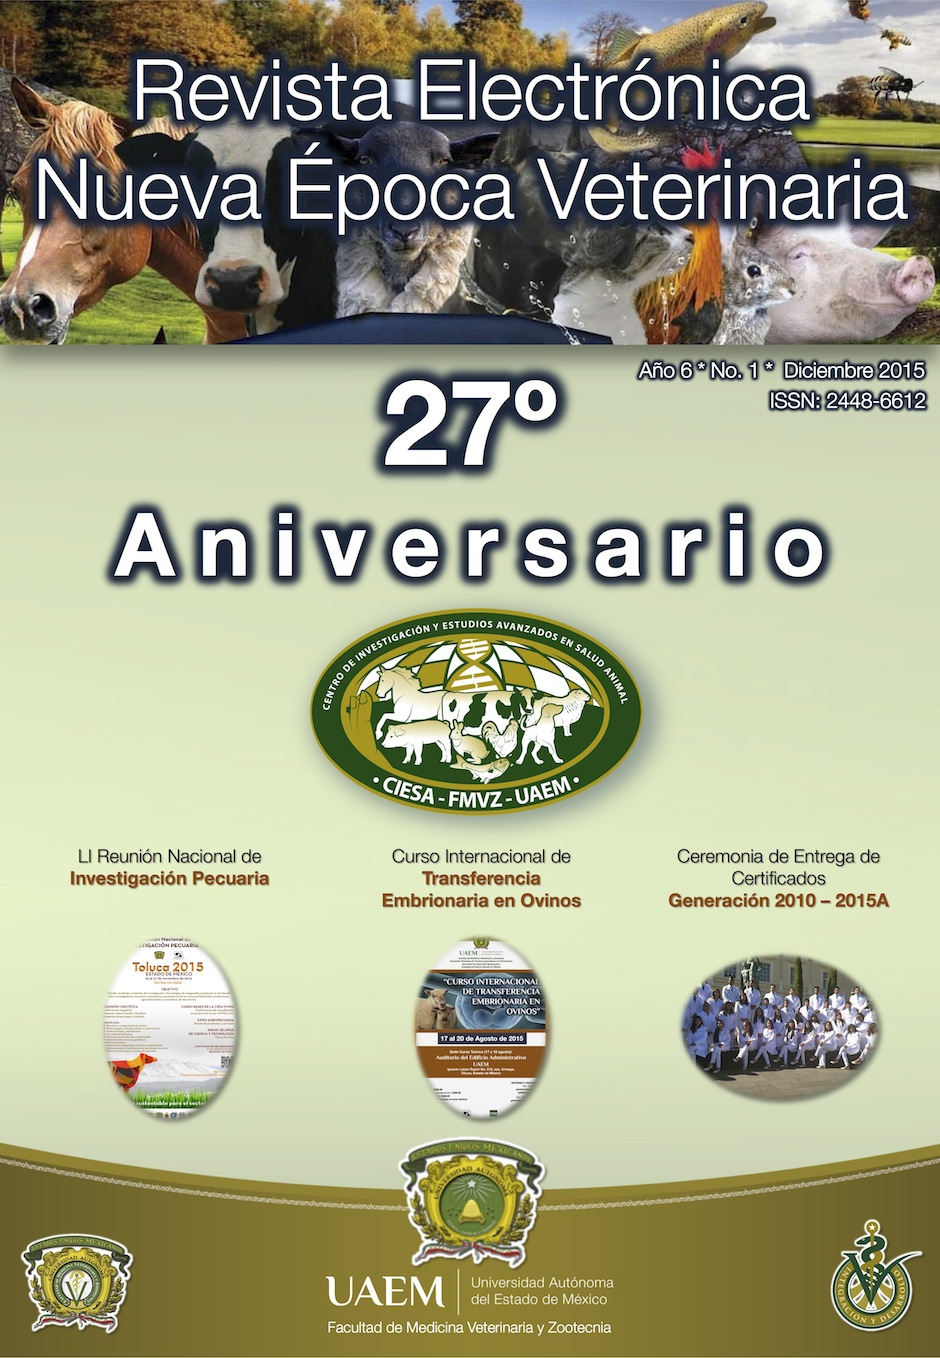 Revista Electrónica Nueva Época Veterinaria, Año 6 - No. 1, Diciembre 2015